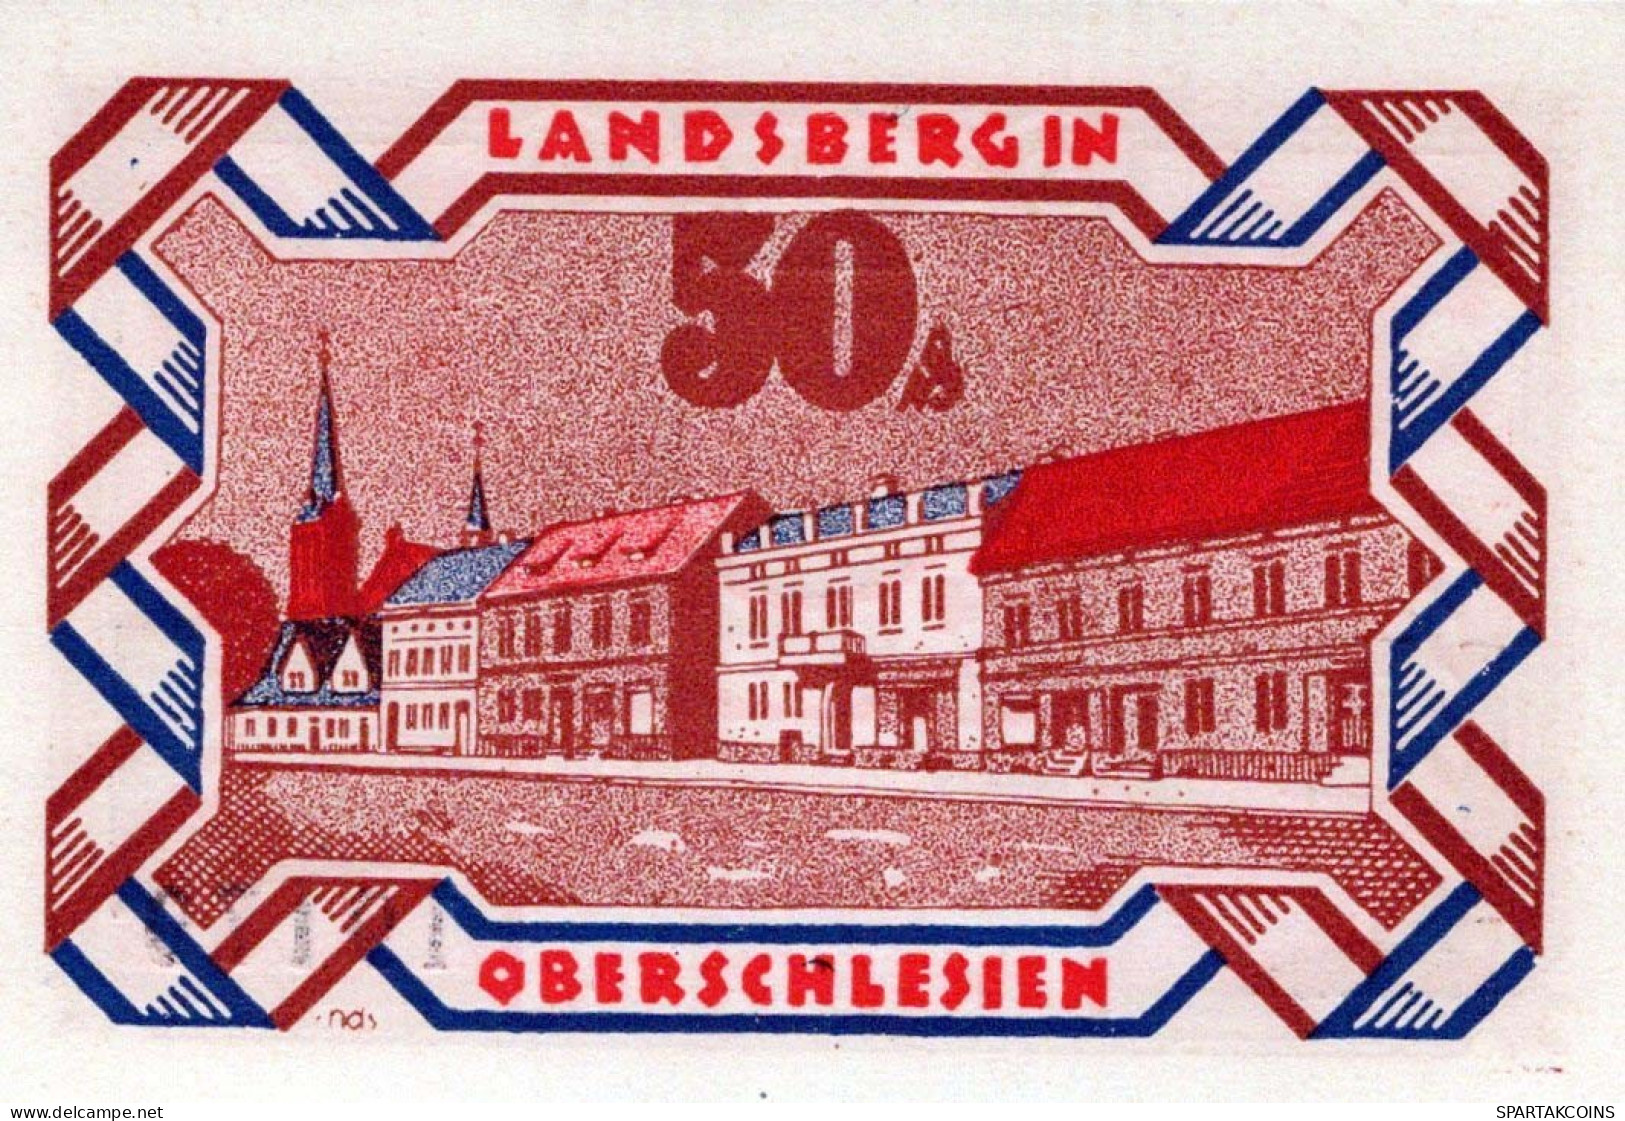 50 PFENNIG 1922 Stadt LANDSBERG OBERSCHLESIEN UNC DEUTSCHLAND #PB927 - [11] Emisiones Locales